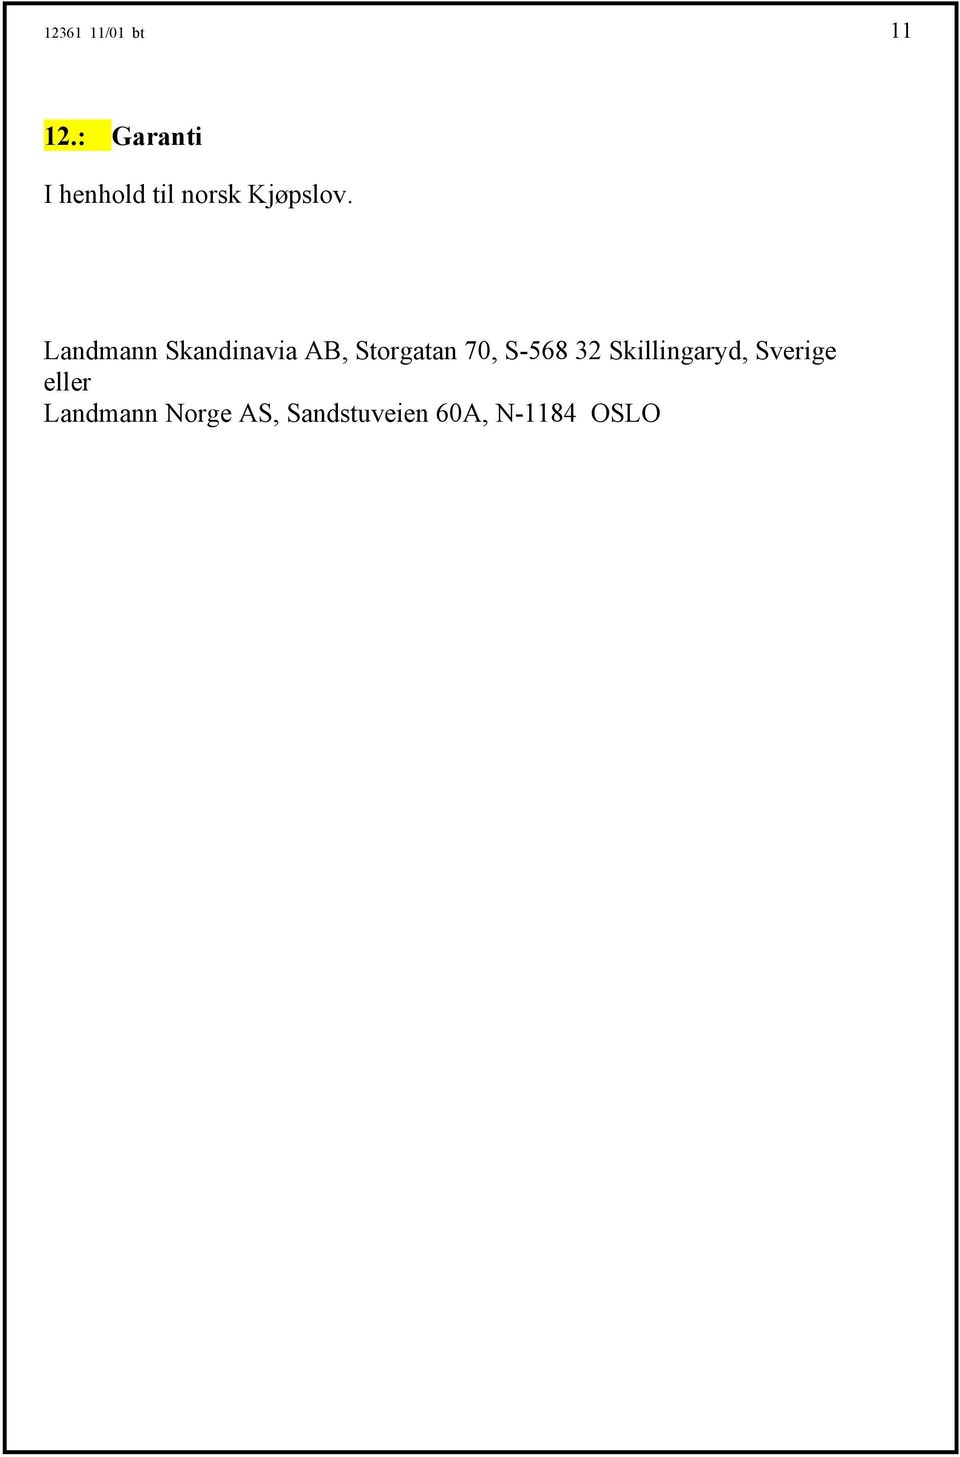 Landmann Skandinavia AB, Storgatan 70, S-568